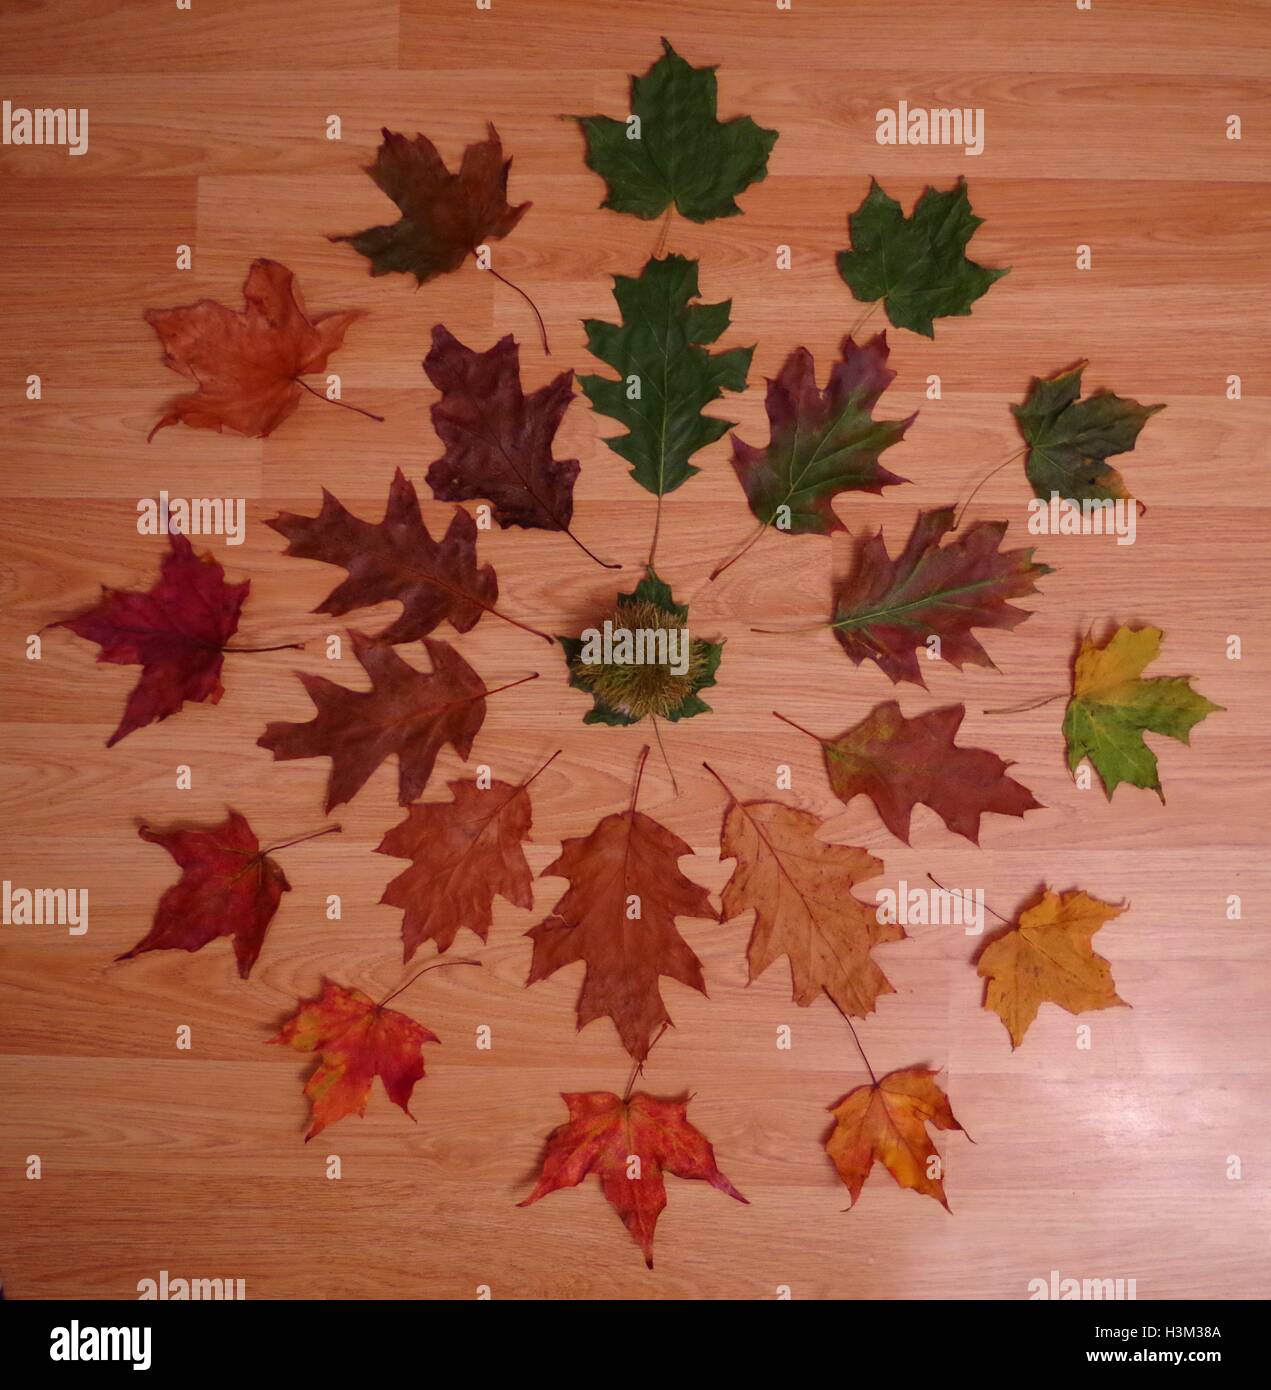 Cycle de la Leaf . recueillies et organisées des Leafs pour montrer le changement de couleur et le cycle d'une feuille Banque D'Images